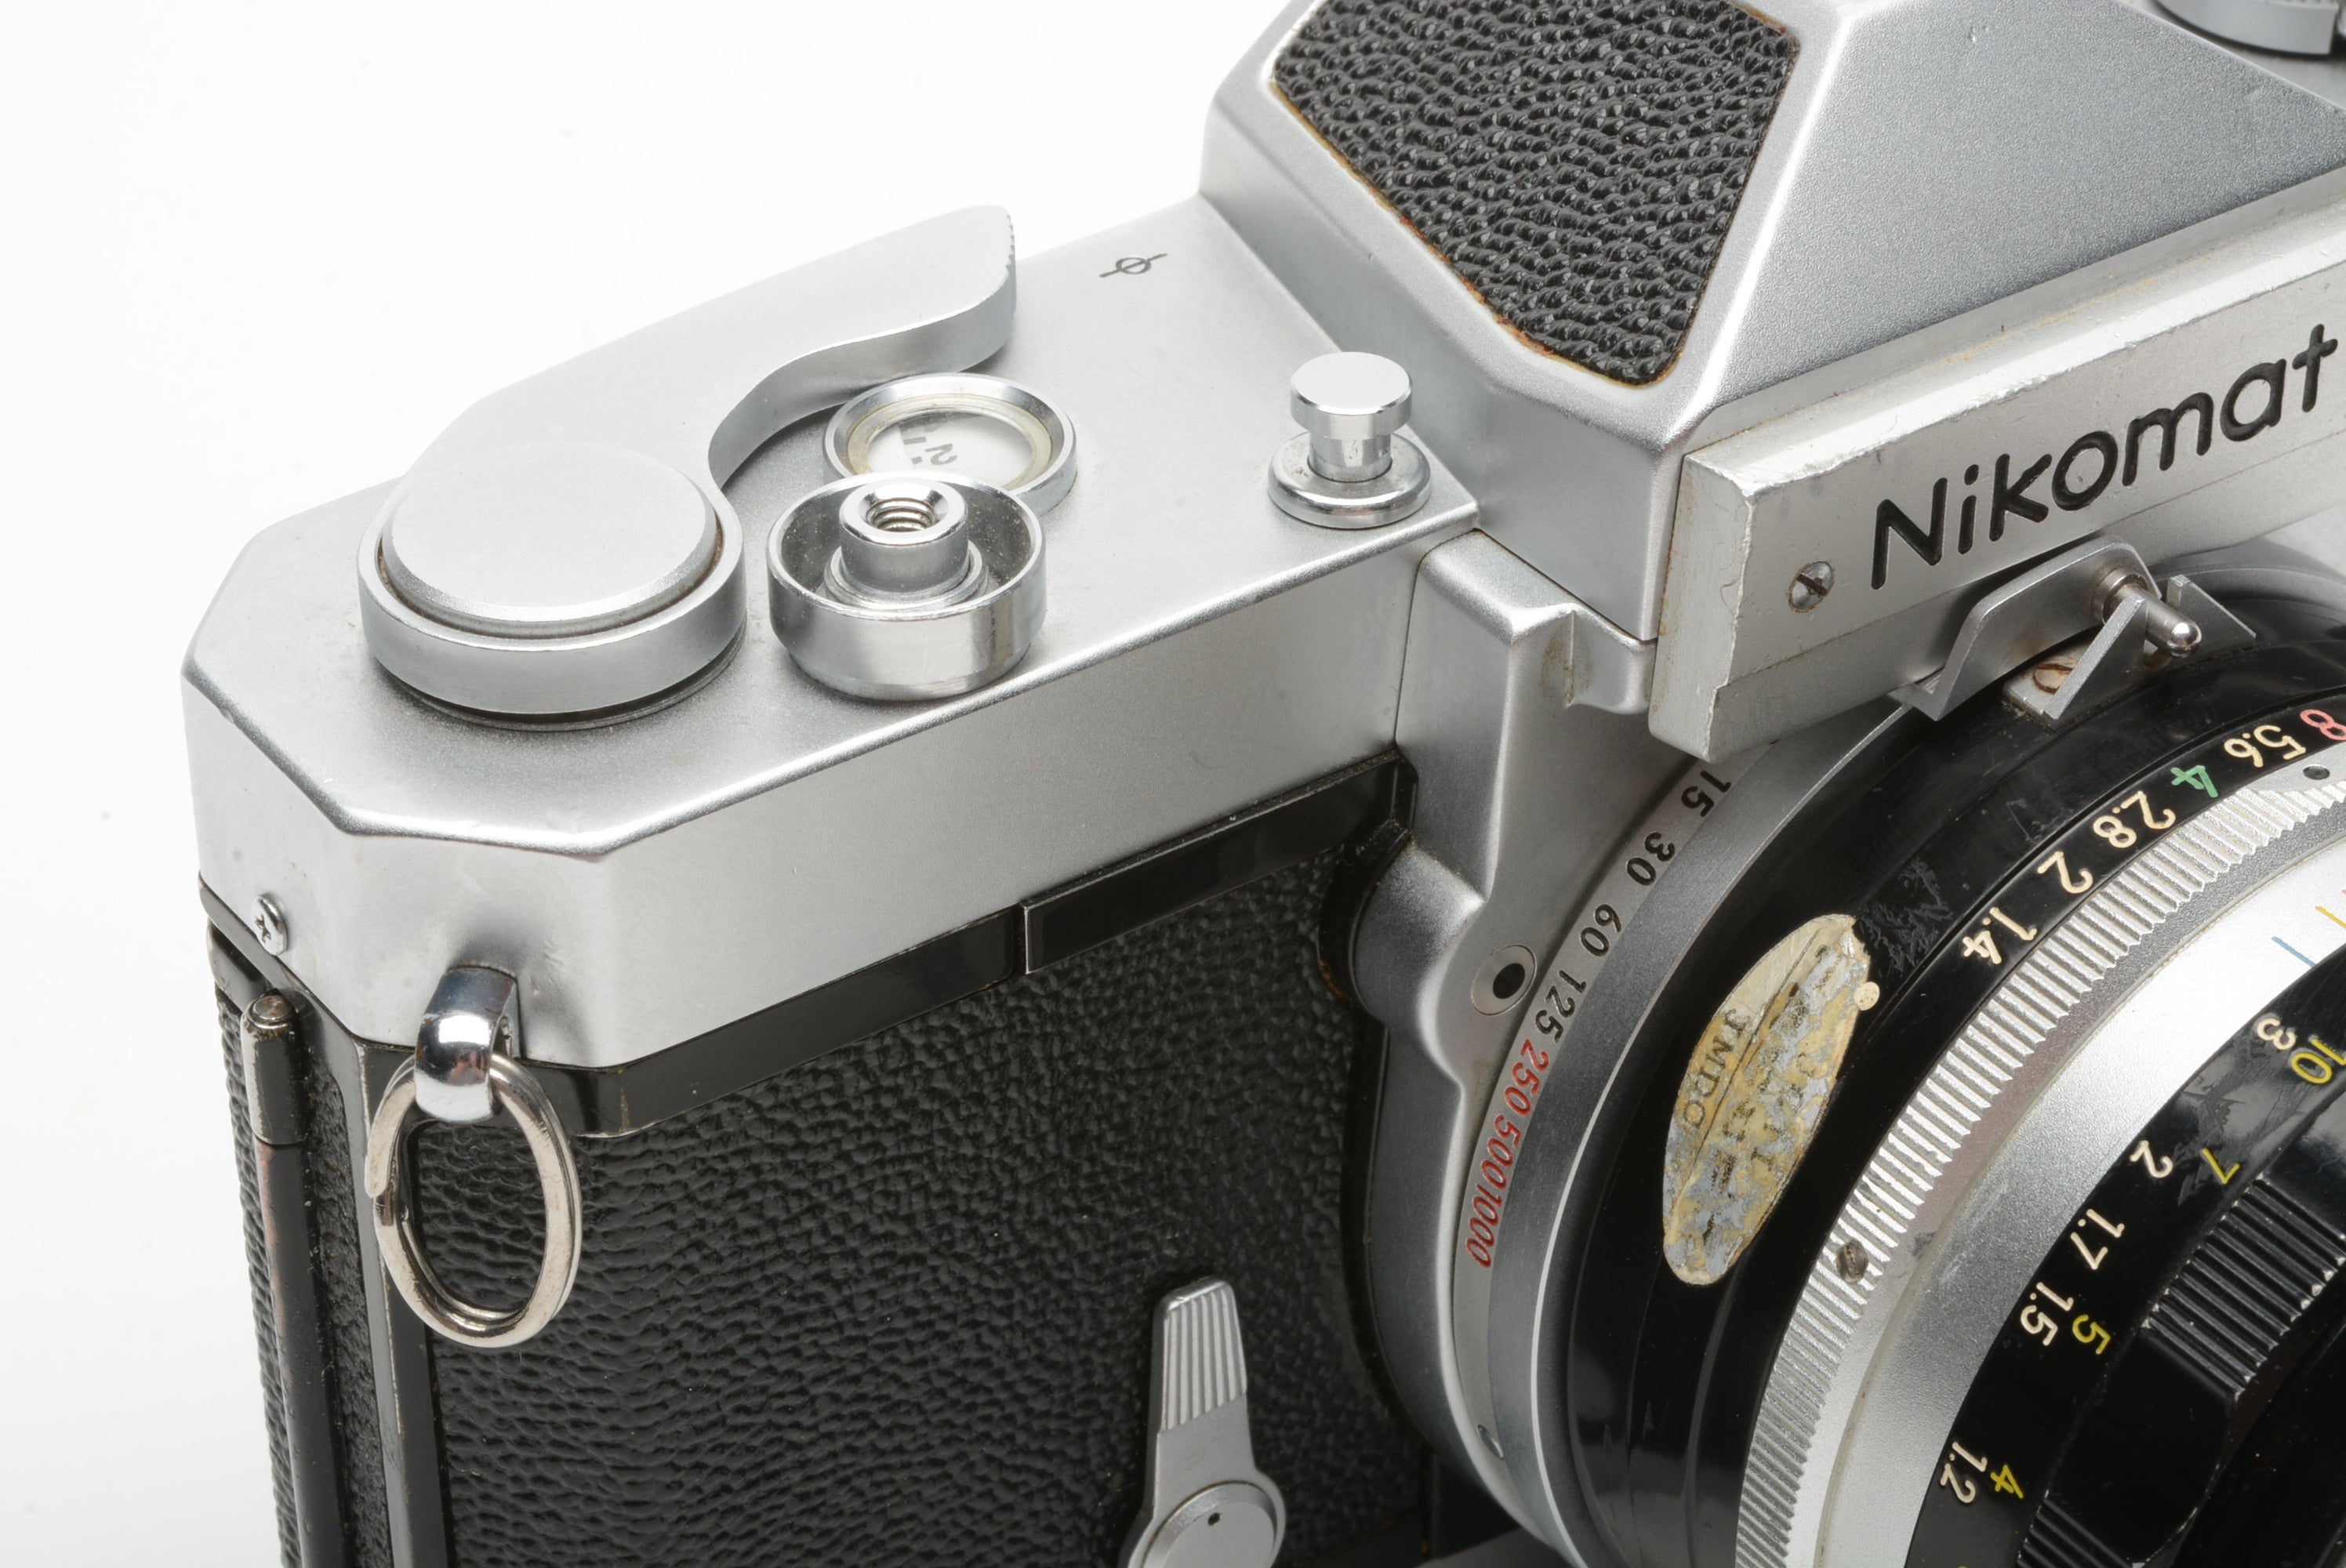 Nikon Nikomat FTN 35mm SLR w/50mm f/1.4, L1A filter, manual, tested